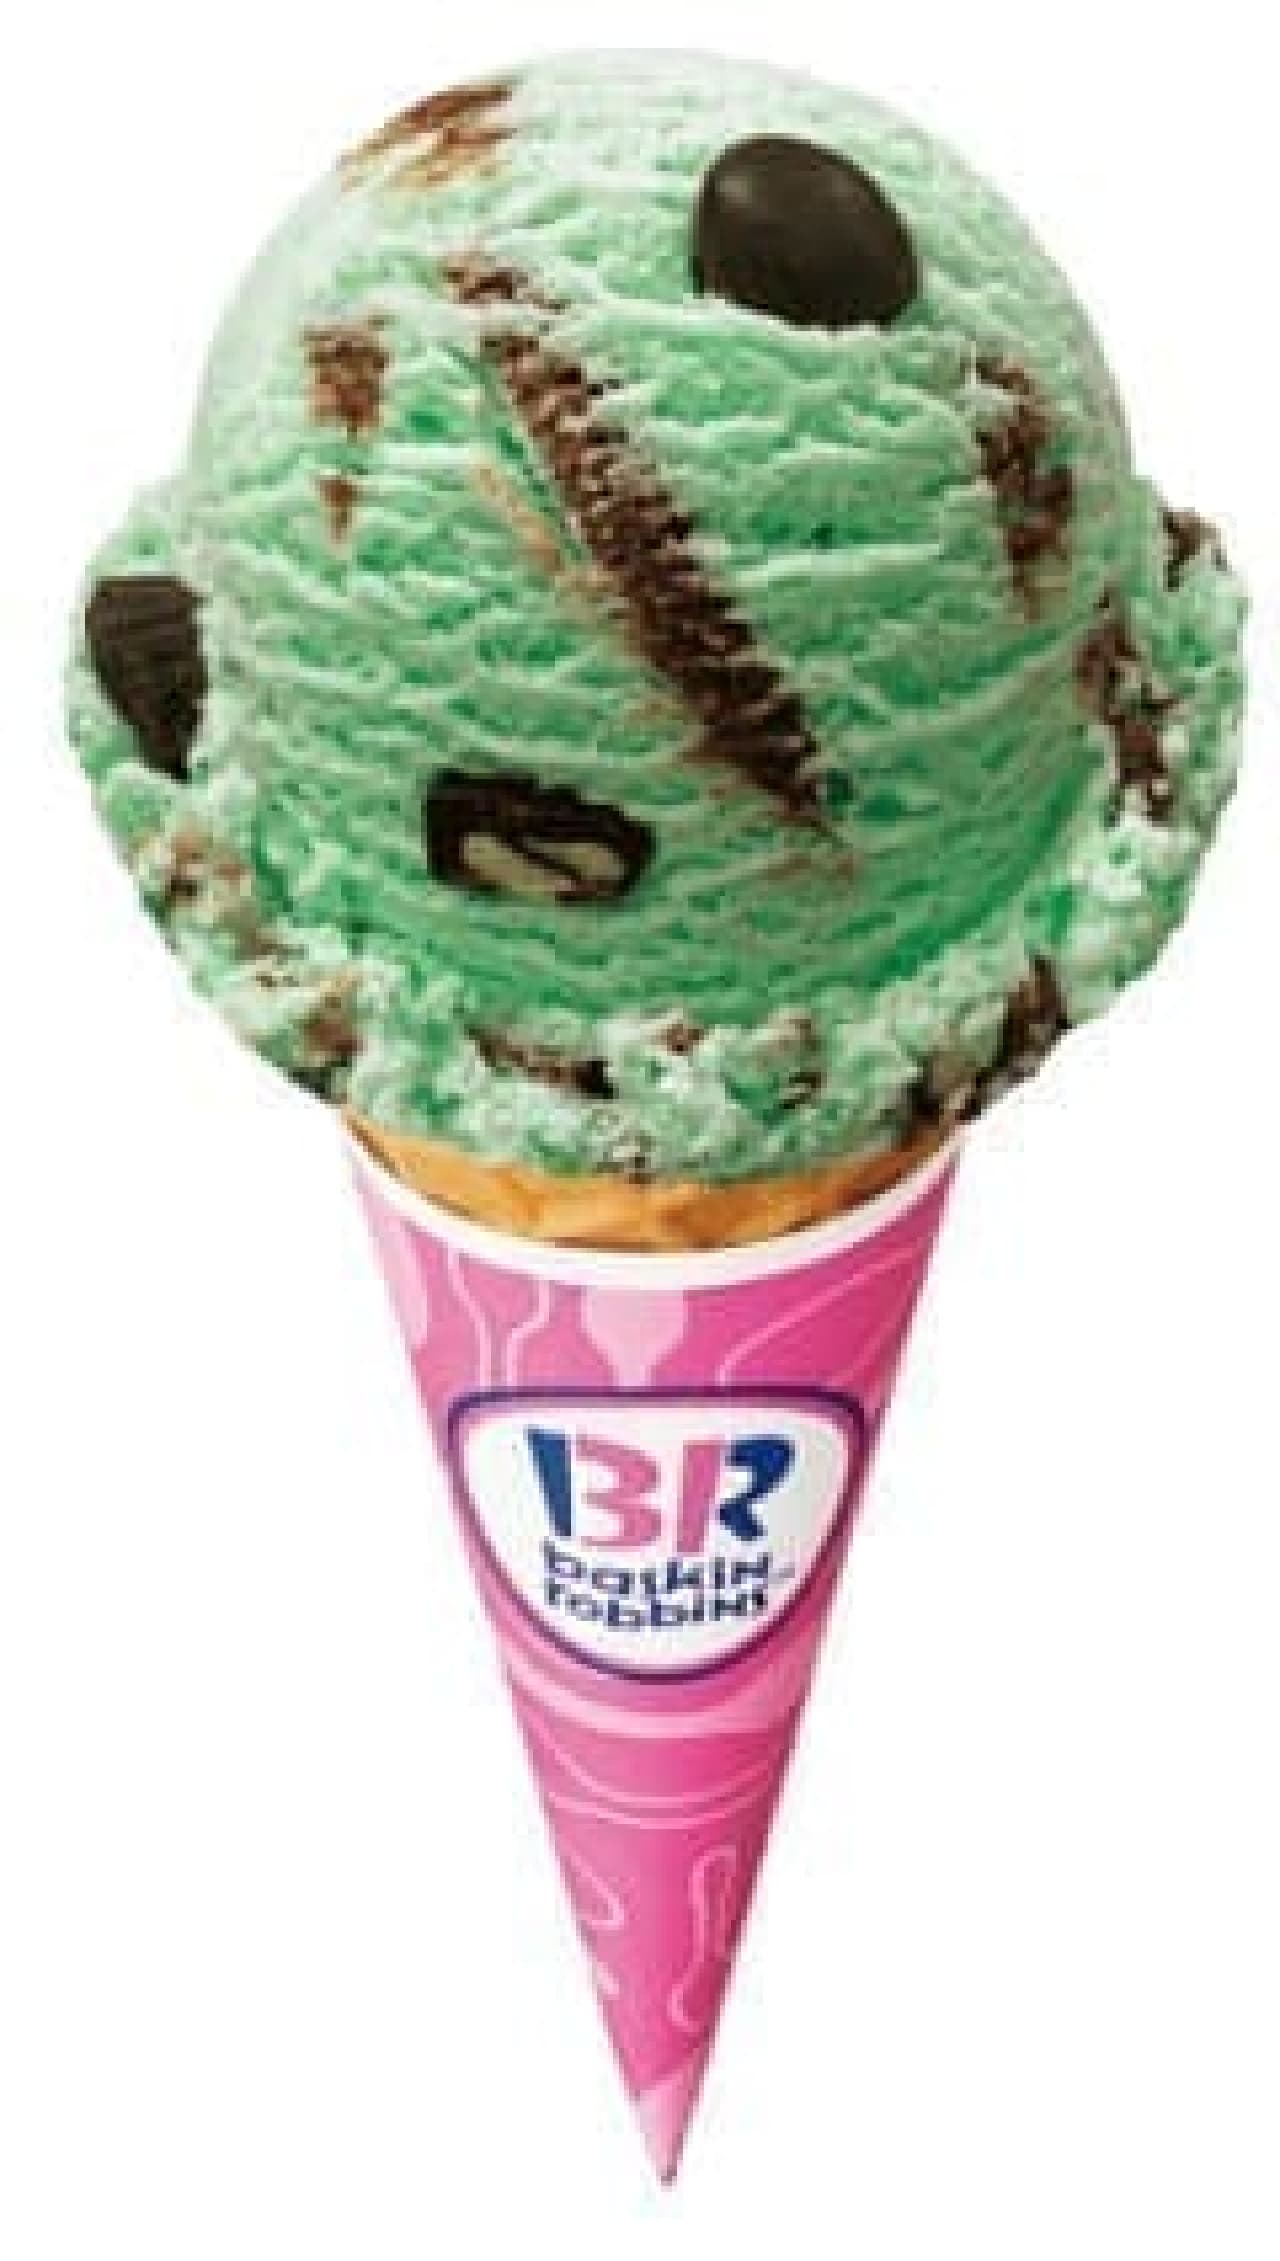 サーティワン アイスクリーム「31 スーパーチョコミント」